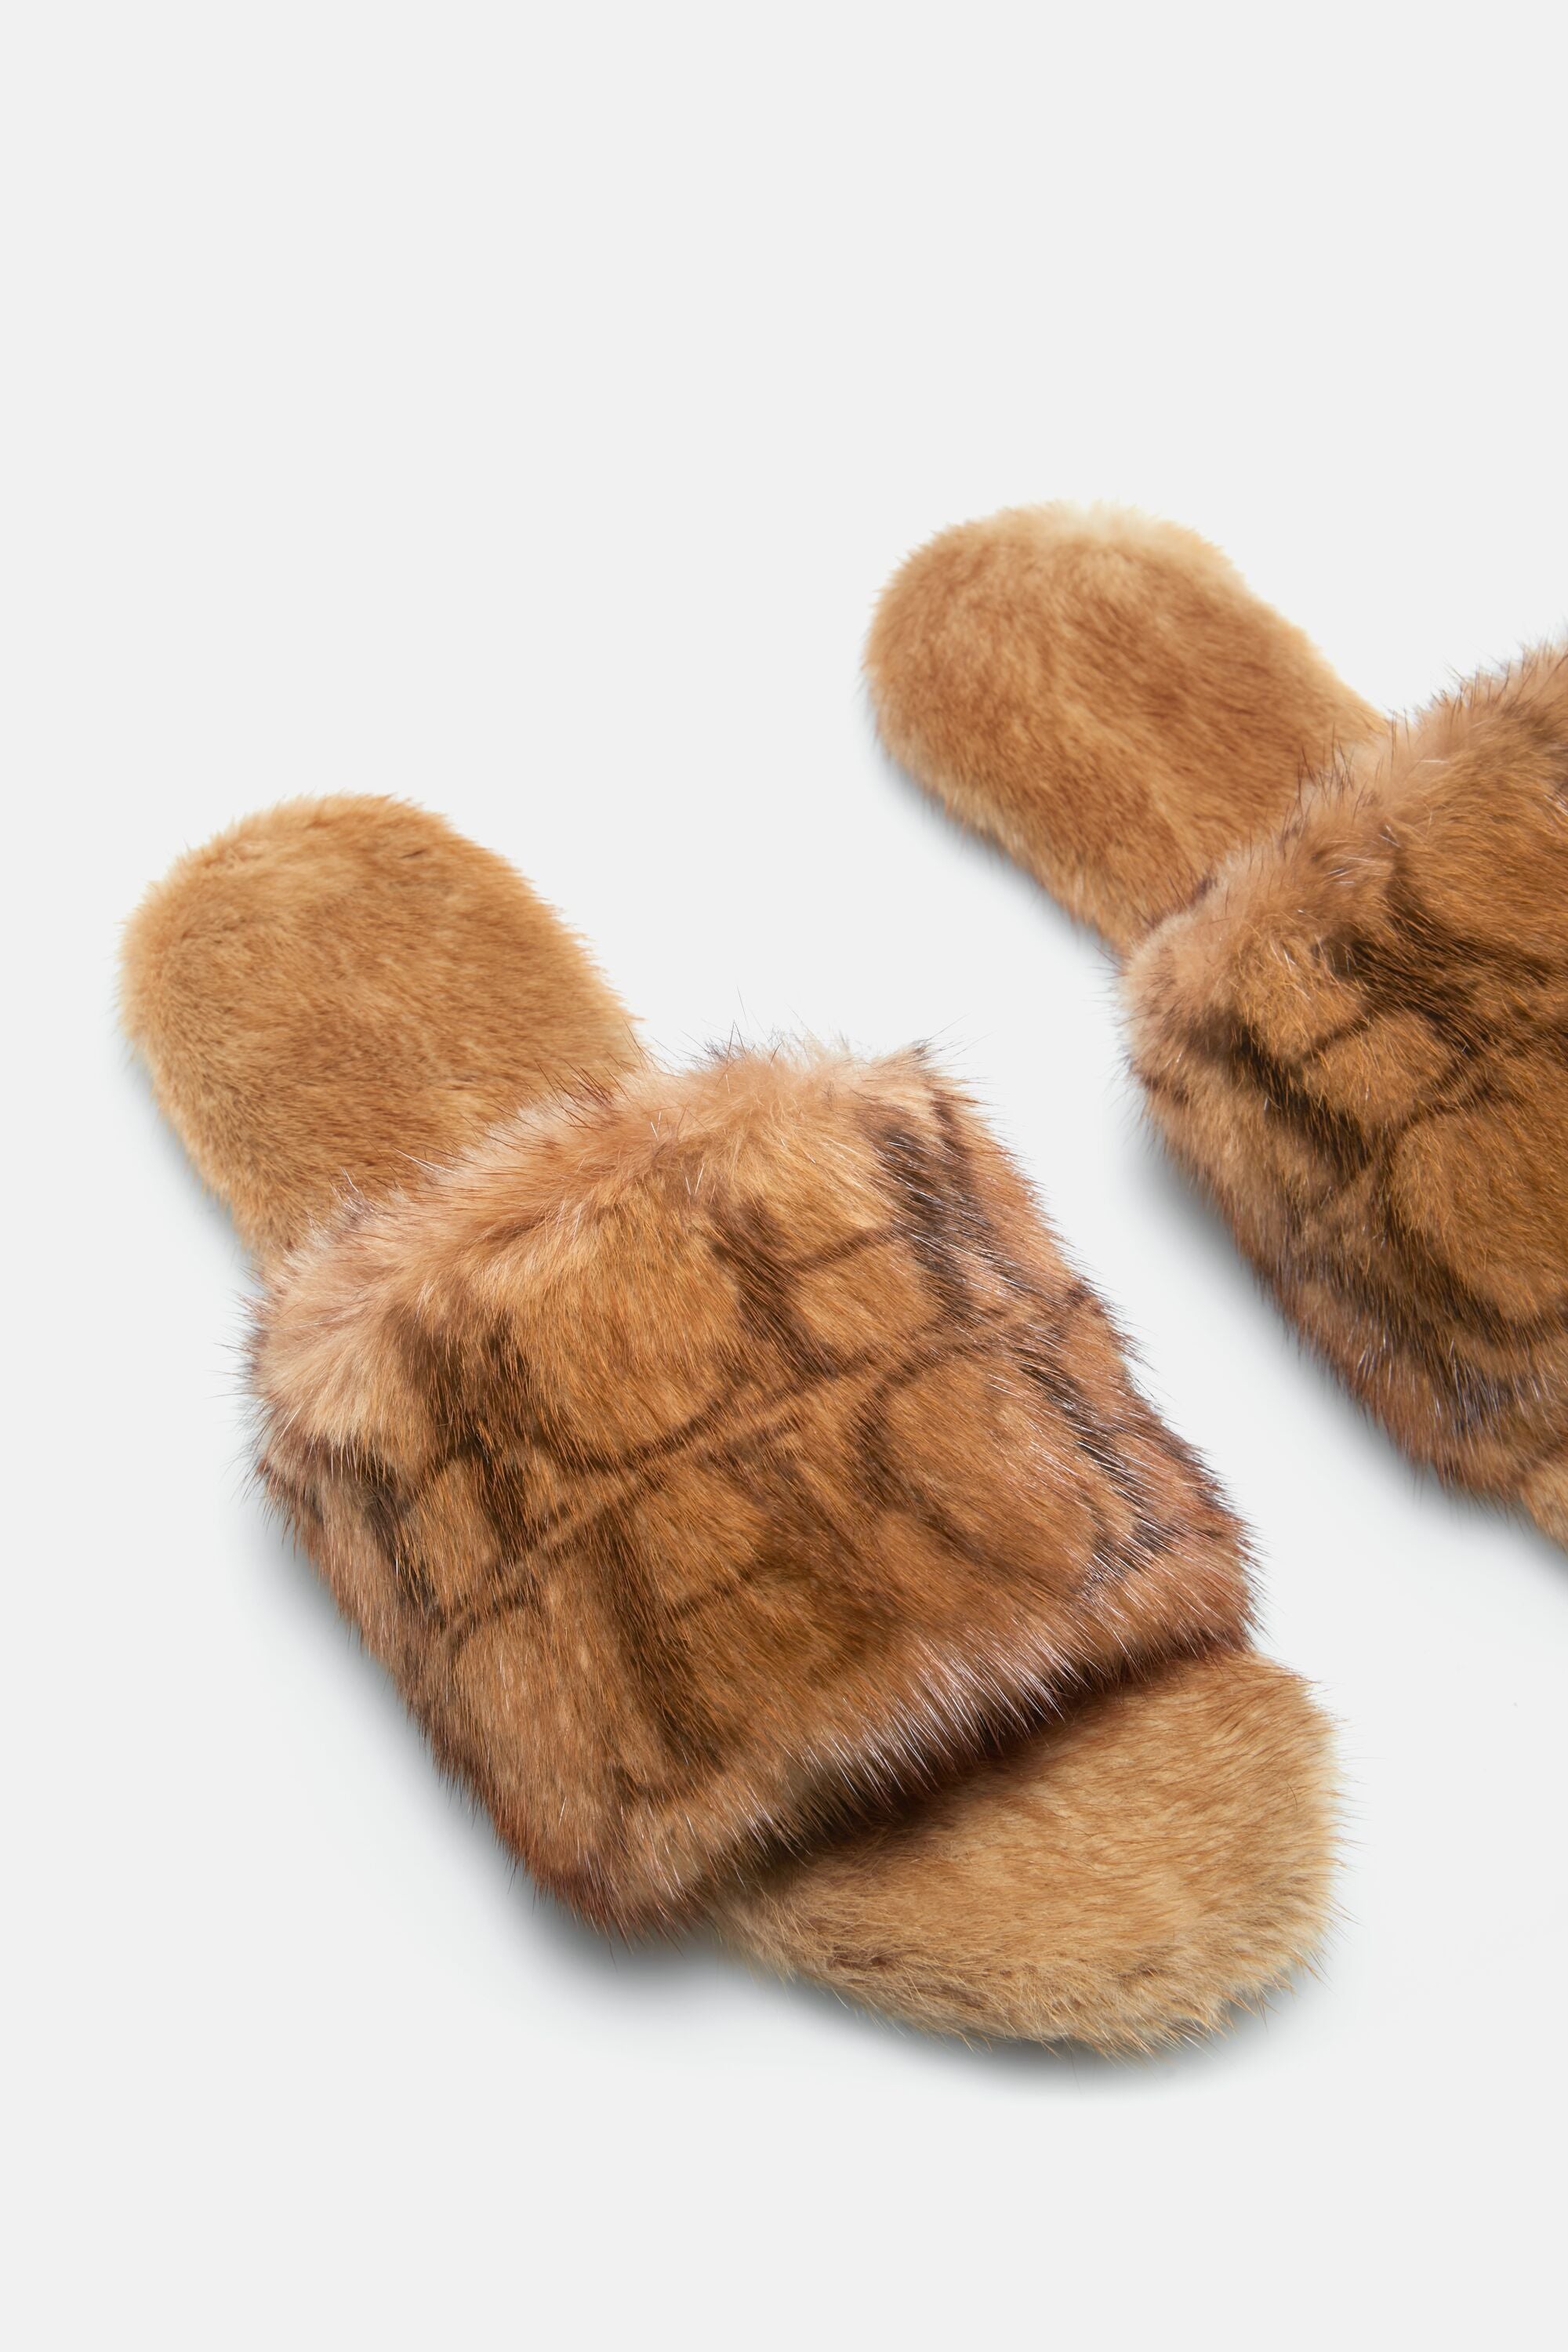 Louis Vuitton Brown in Mink Gloves